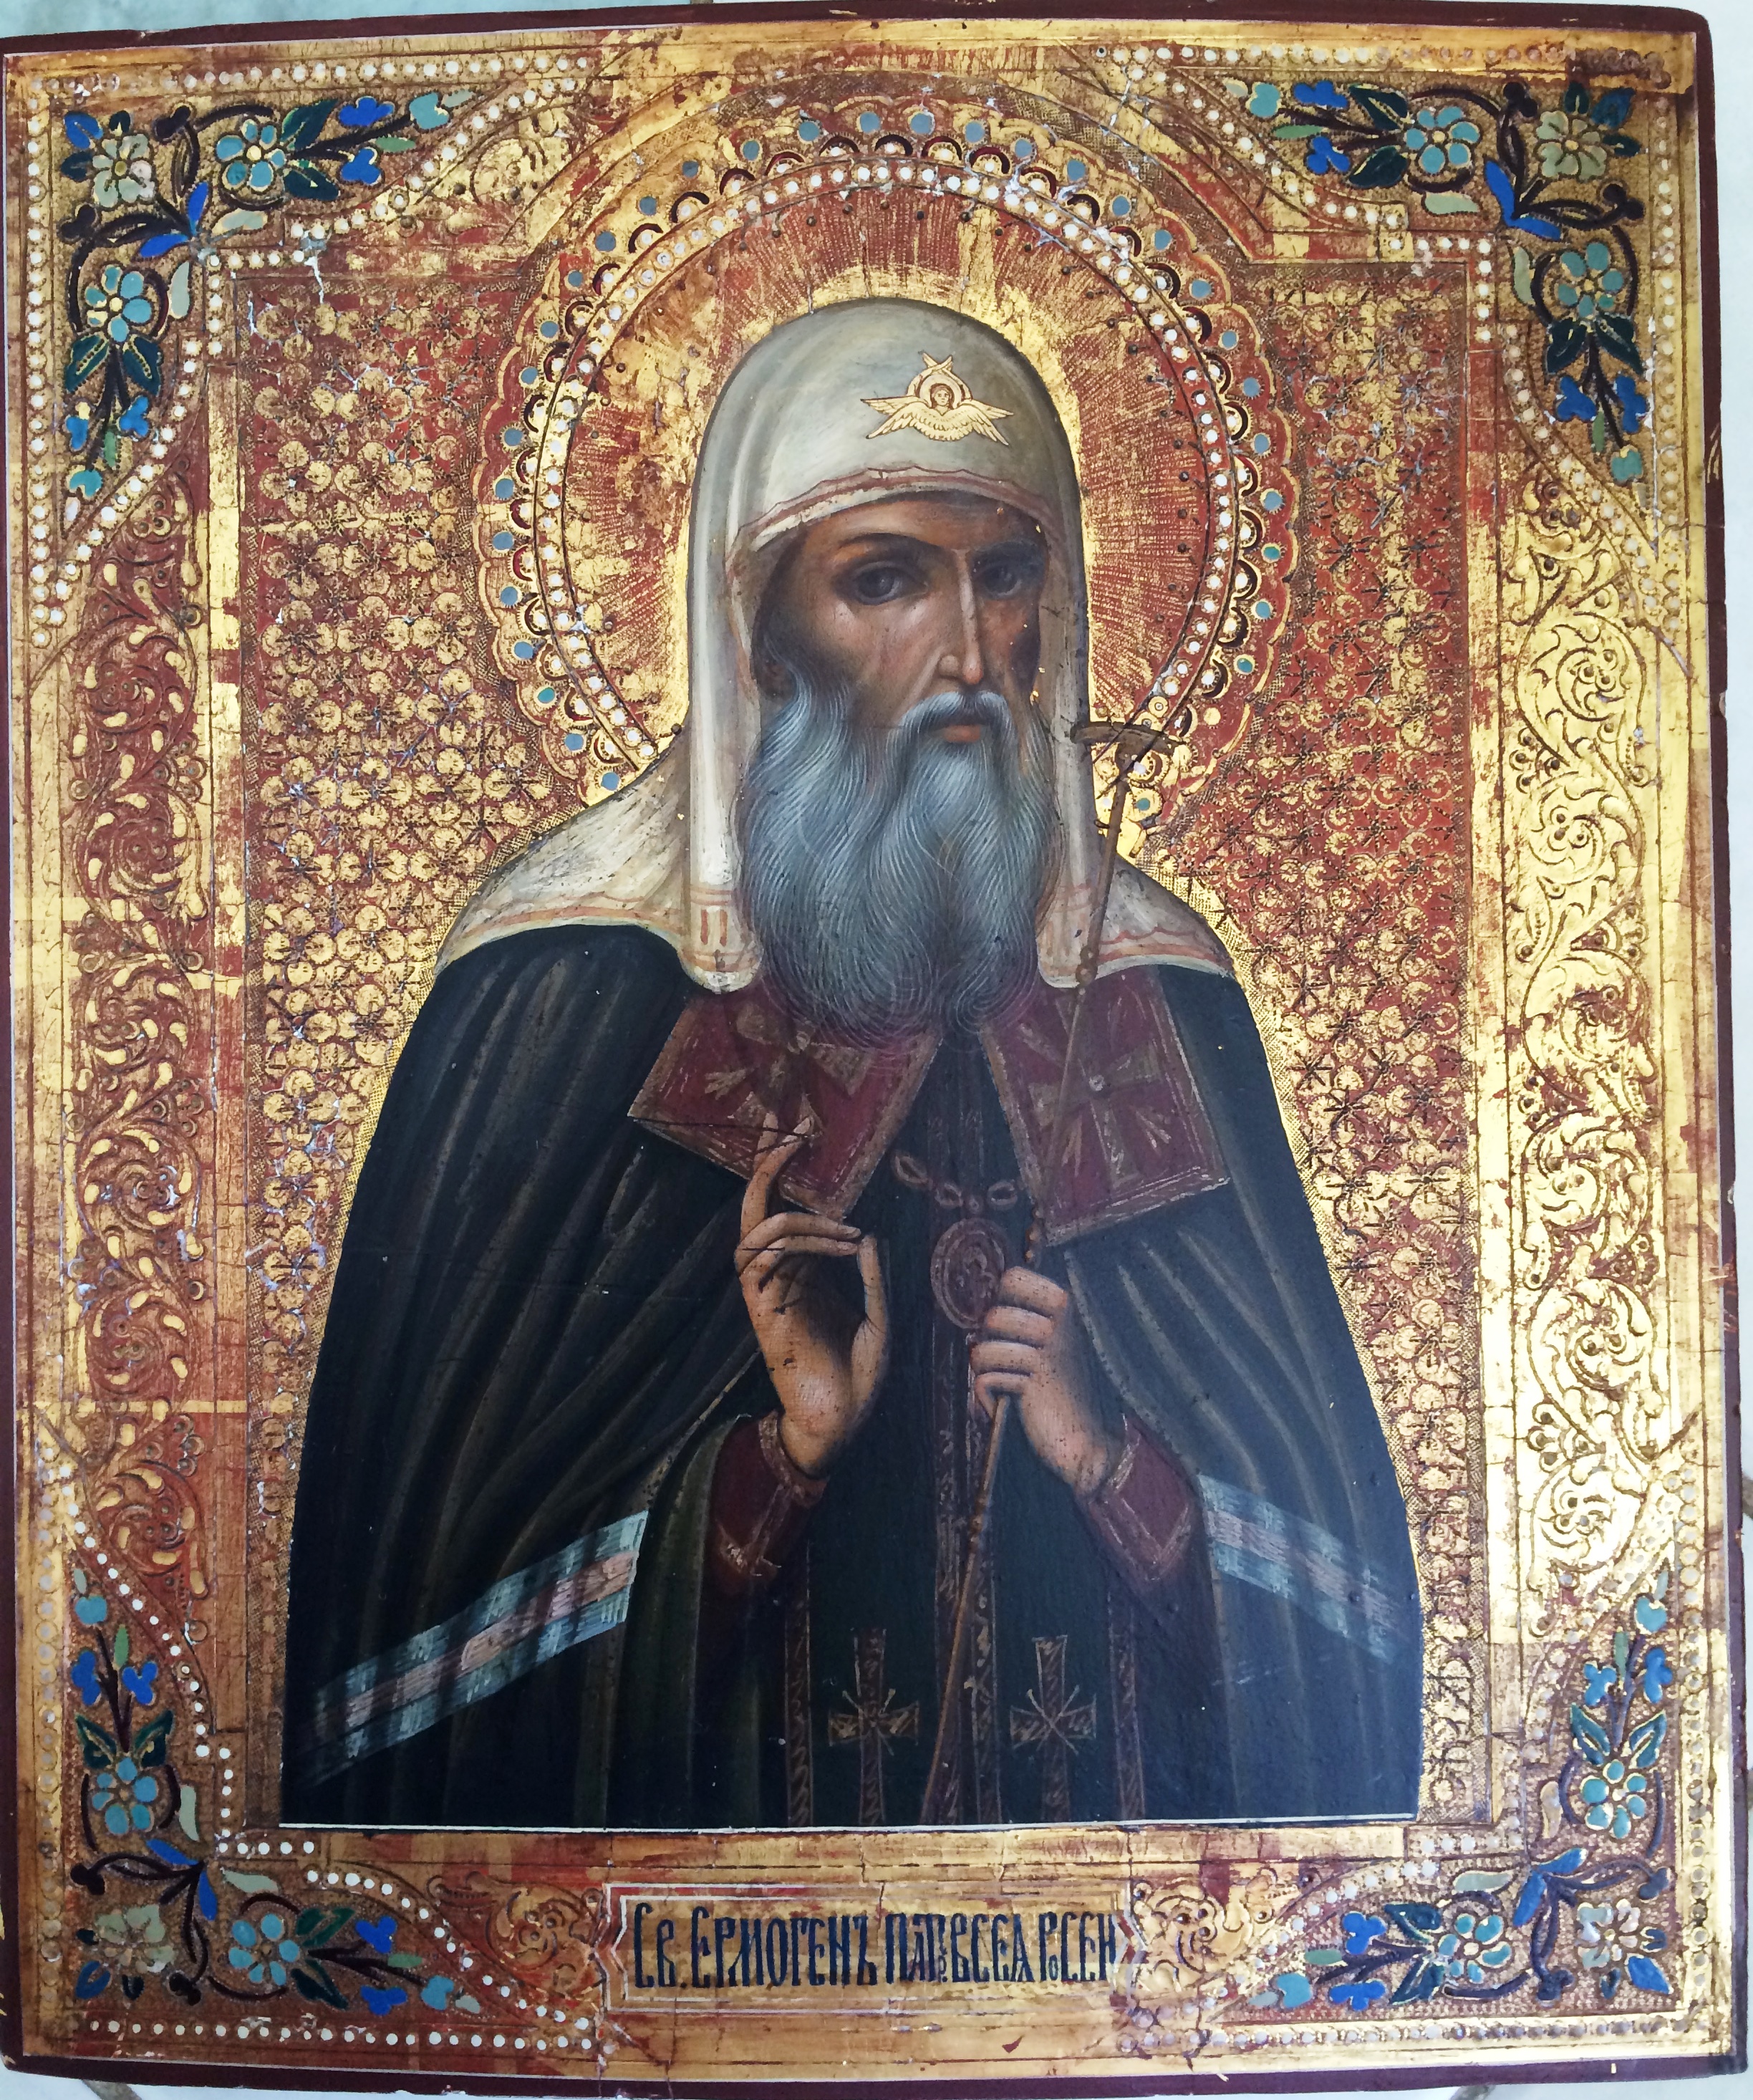 Представляем старинную икону Святой Гермоген для Казанских коллекционеров может представлять интерес